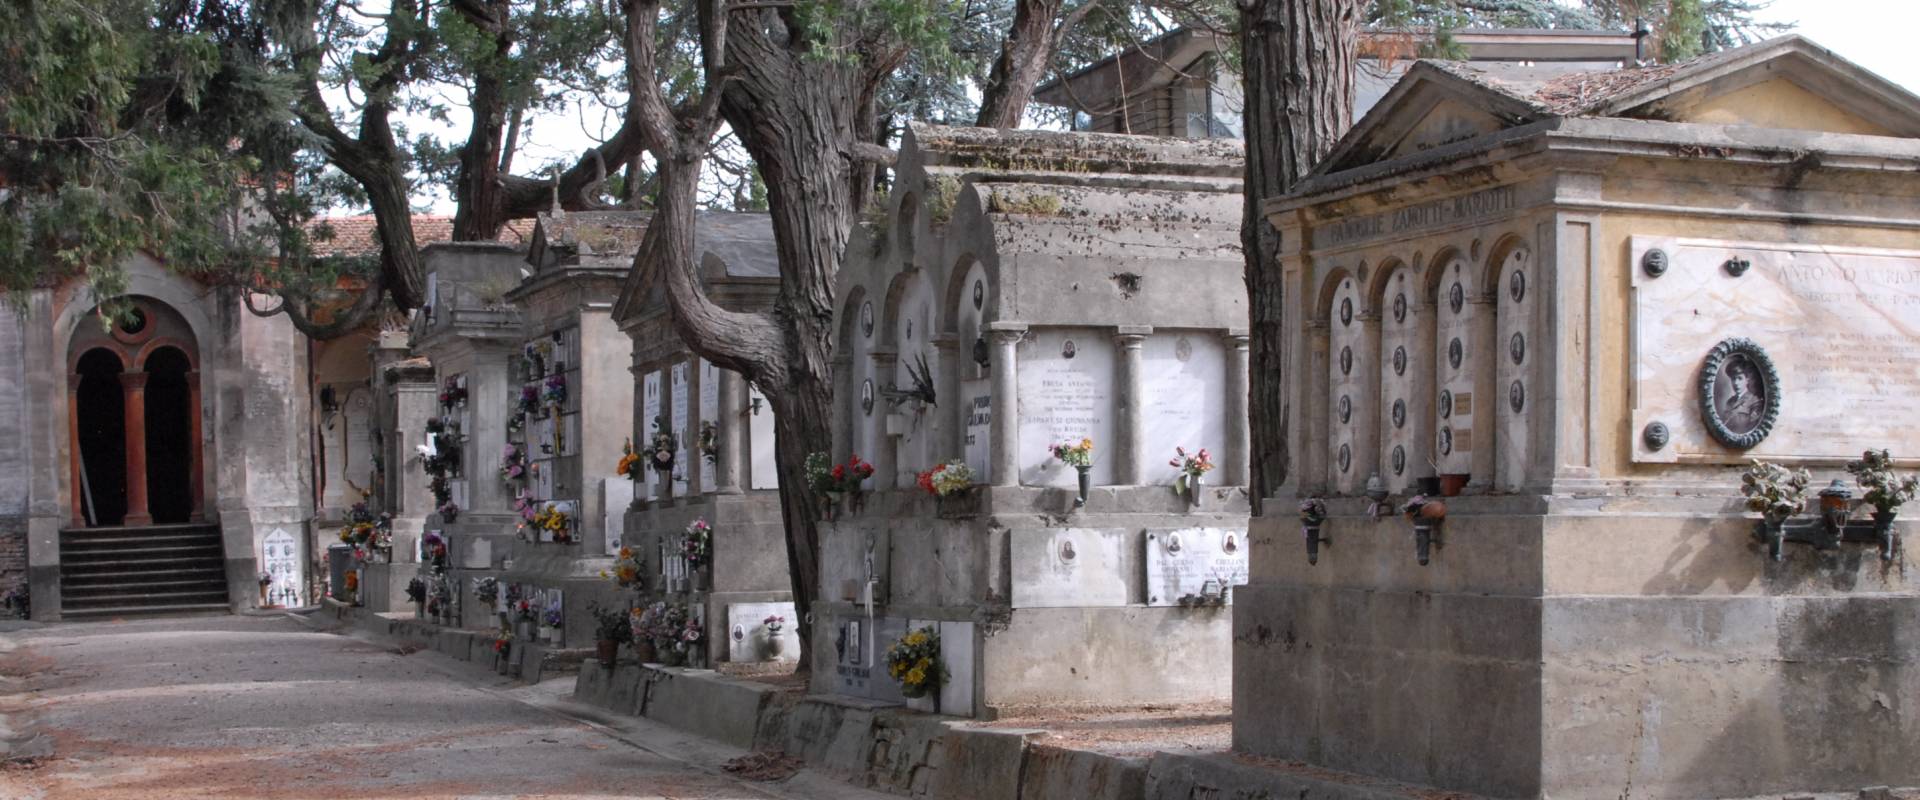 DSC 4175 cimitero monumentale Massa Lombarda 20 foto di SveMi